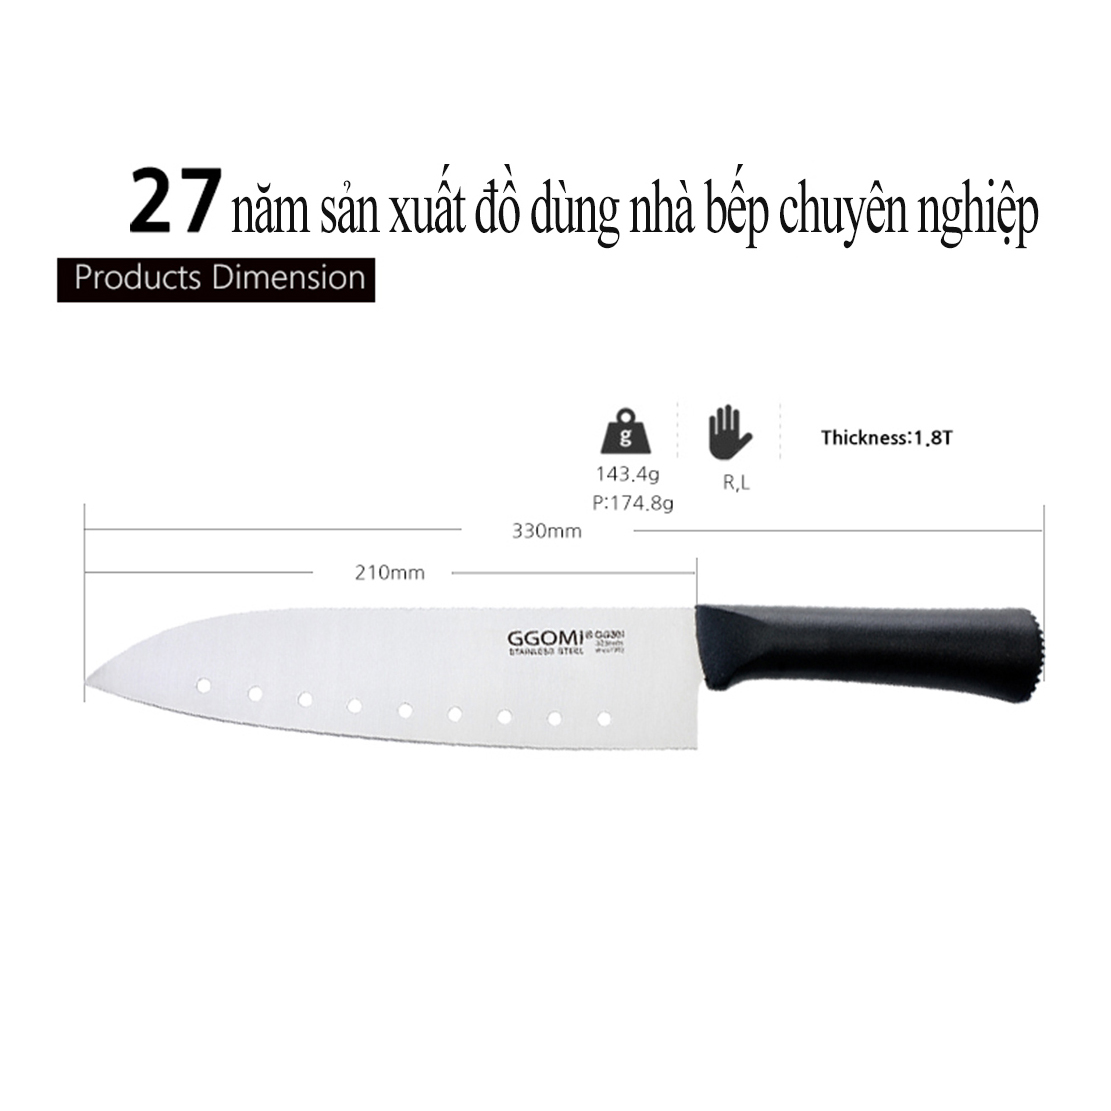 [HÀNG CHÍNH HÃNG] Dao nhà bếp dài 33cm, lưỡi dao dài 21cm bằng thép không gỉ an toàn sức khỏe của GGOMi Hàn Quốc GG301